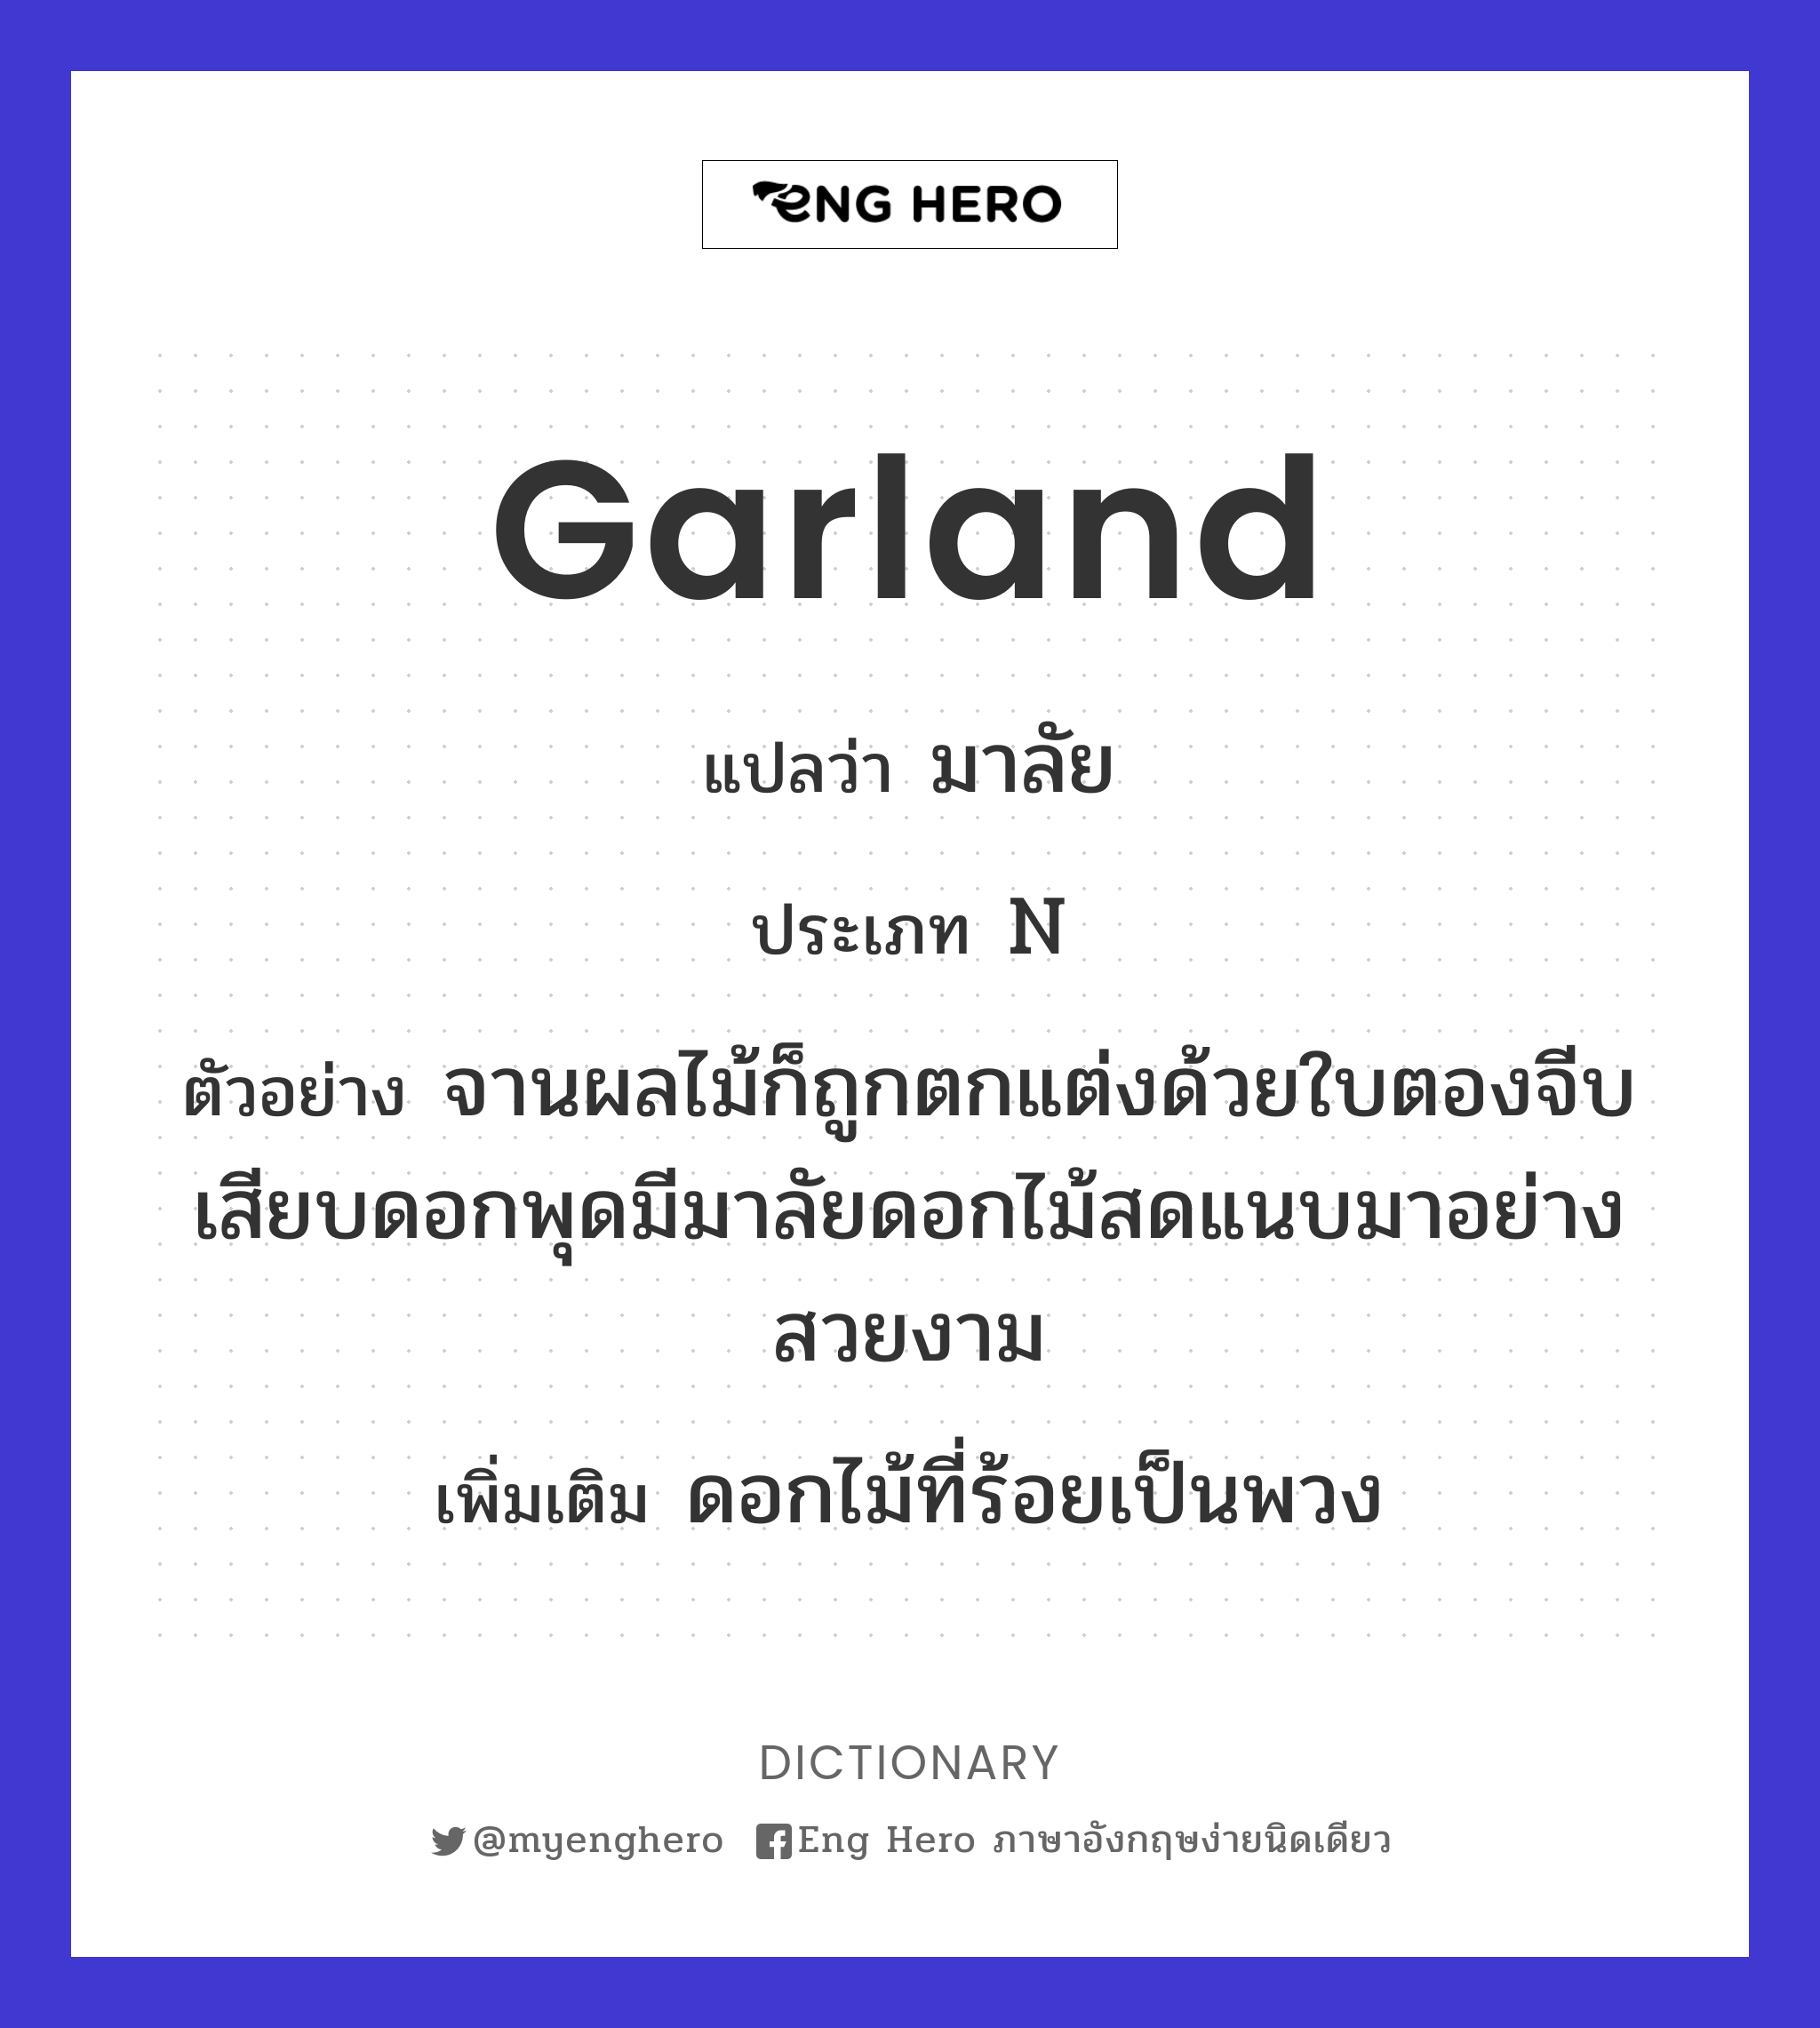 garland